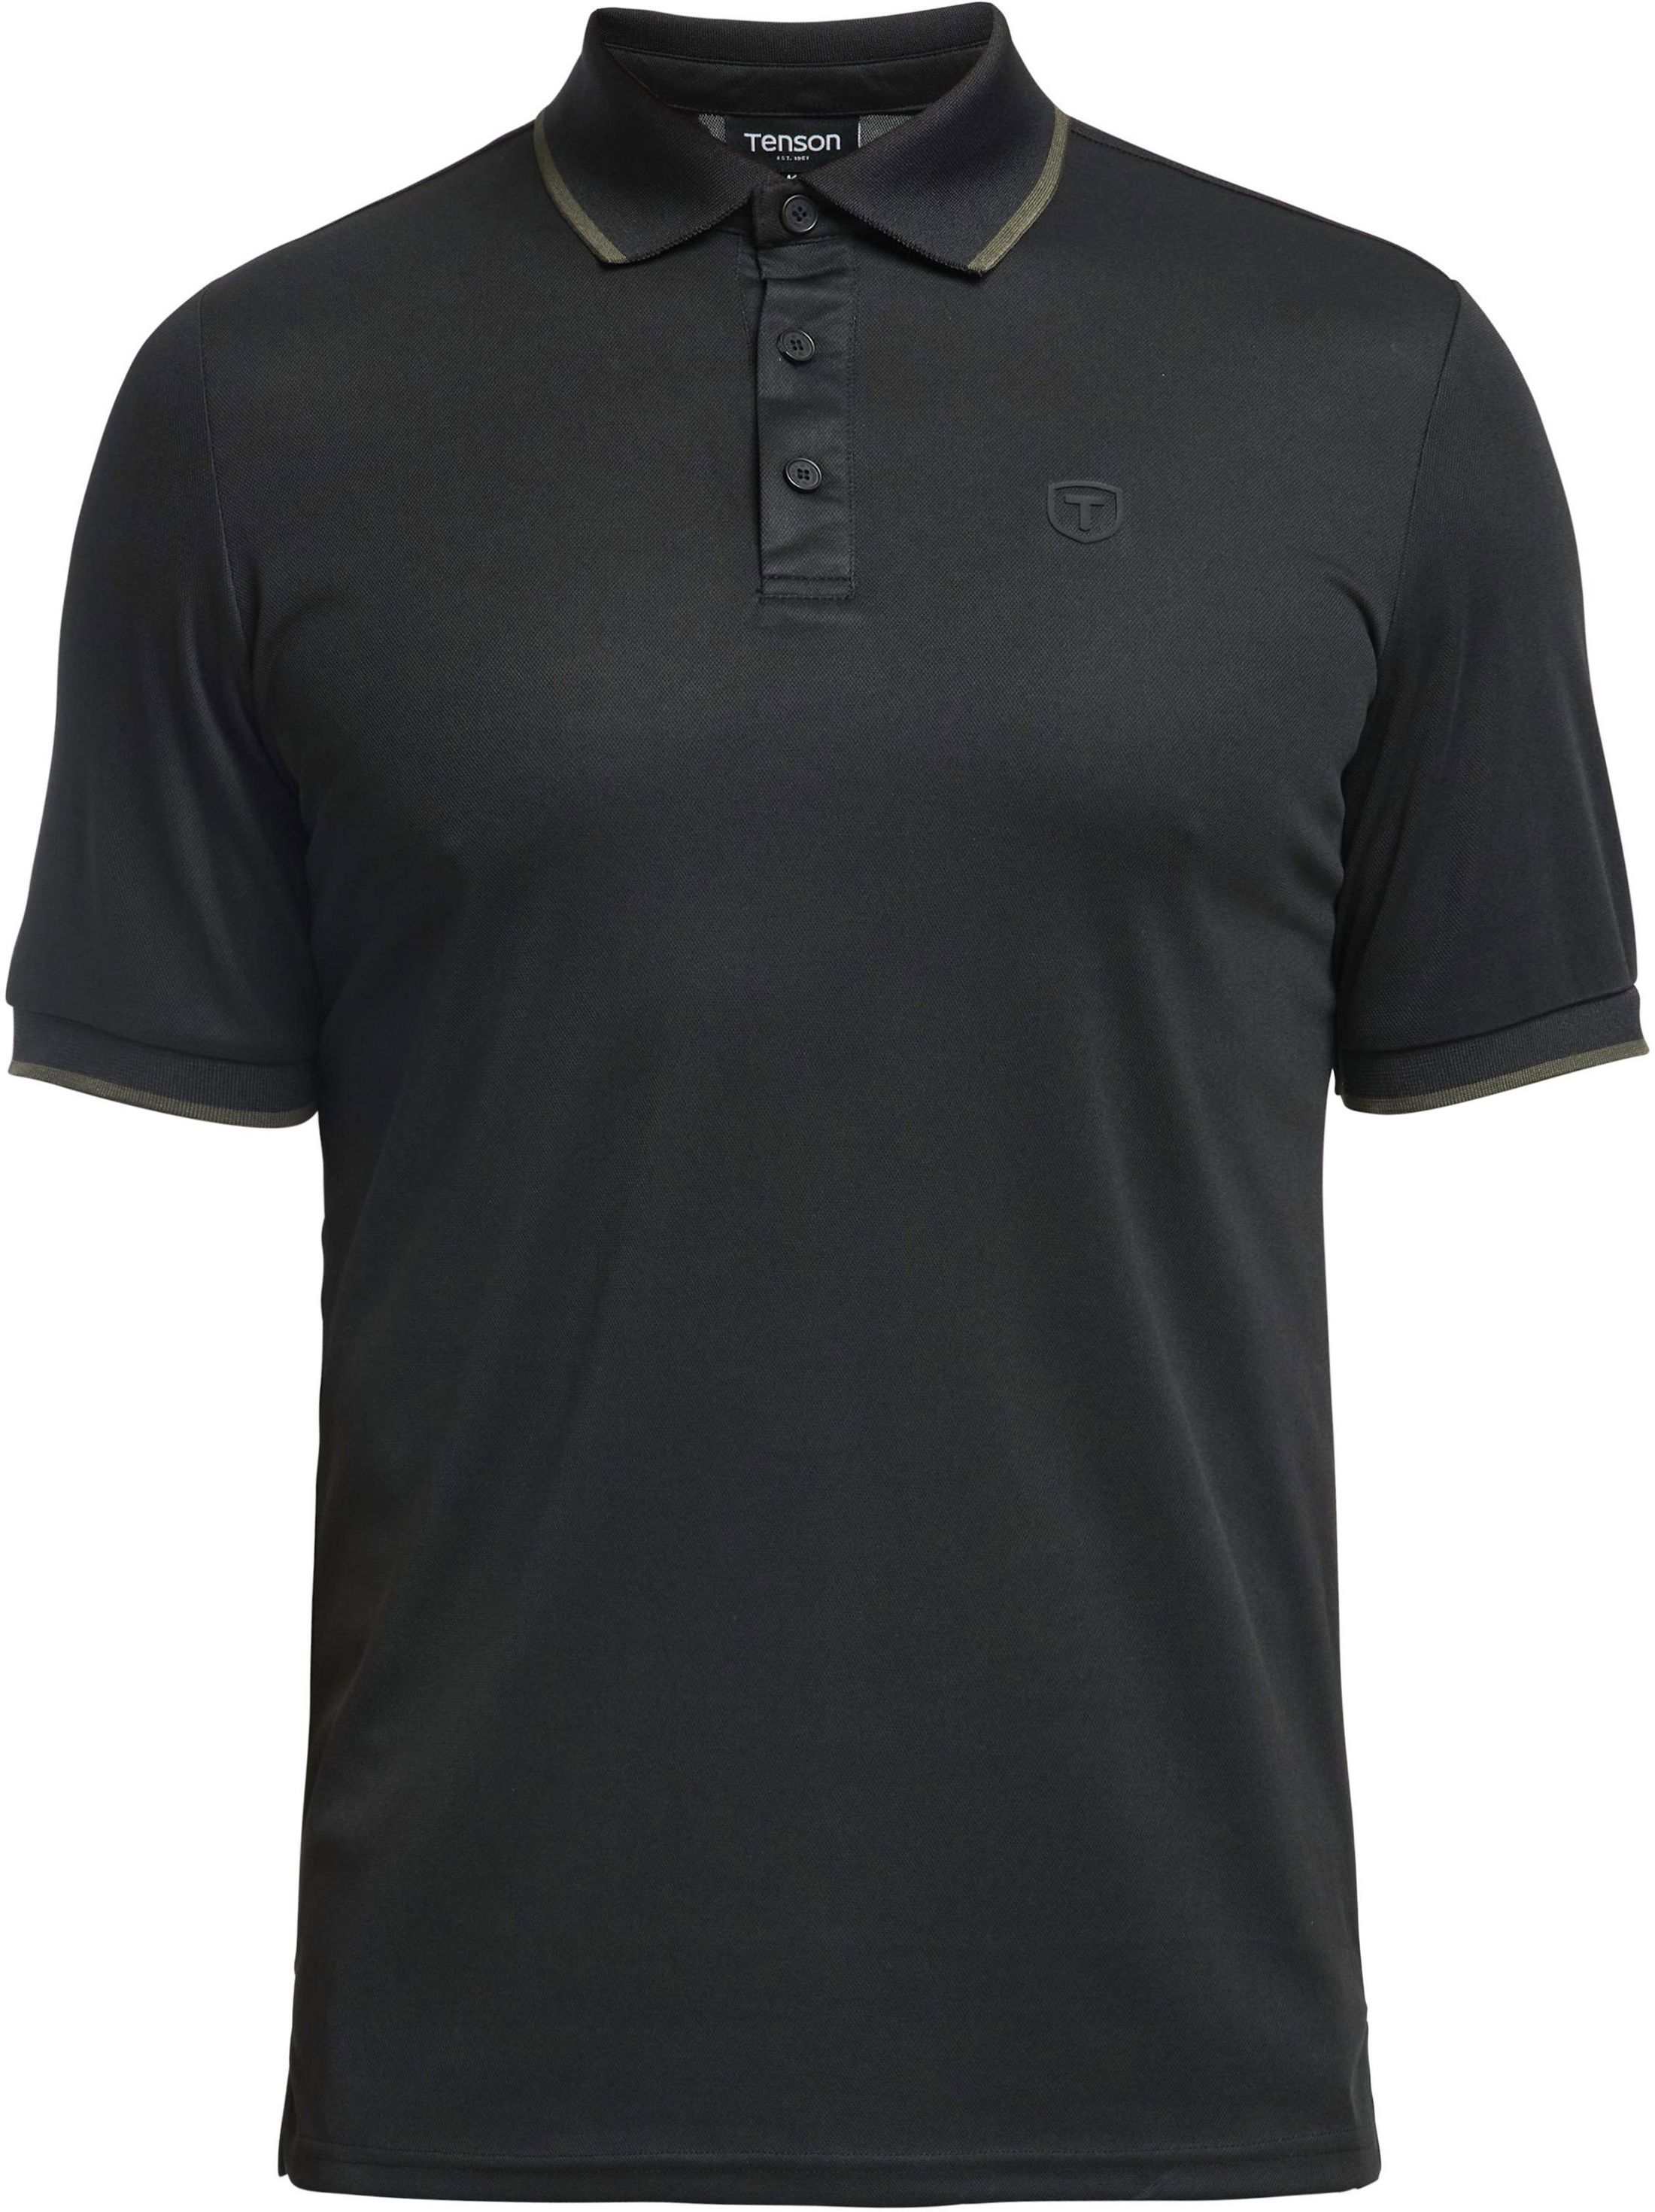 Tenson Polo Shirt Wedge Black size L